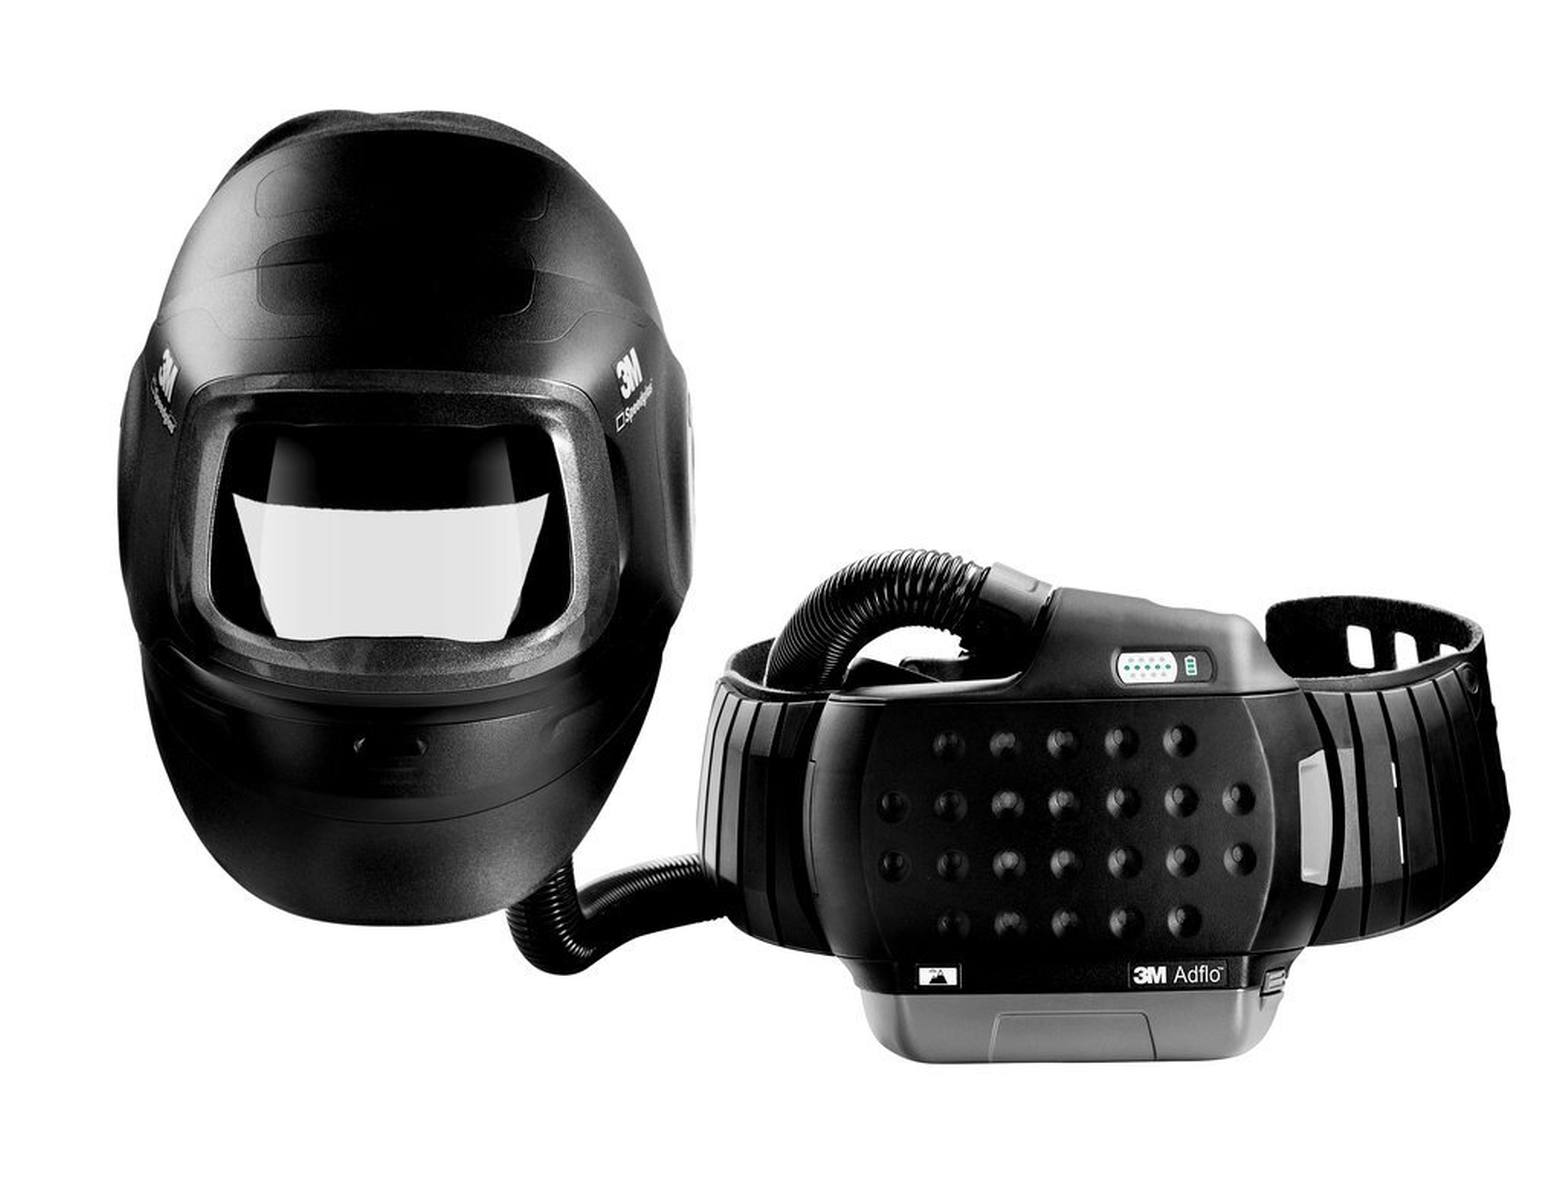 3M Speedglas Máscara de soldadura de alto rendimiento G5-01 con protección respiratoria de soplado 3M Adflo, batería de alto rendimiento y bolsa de almacenamiento, sin filtro de soldadura, H617800